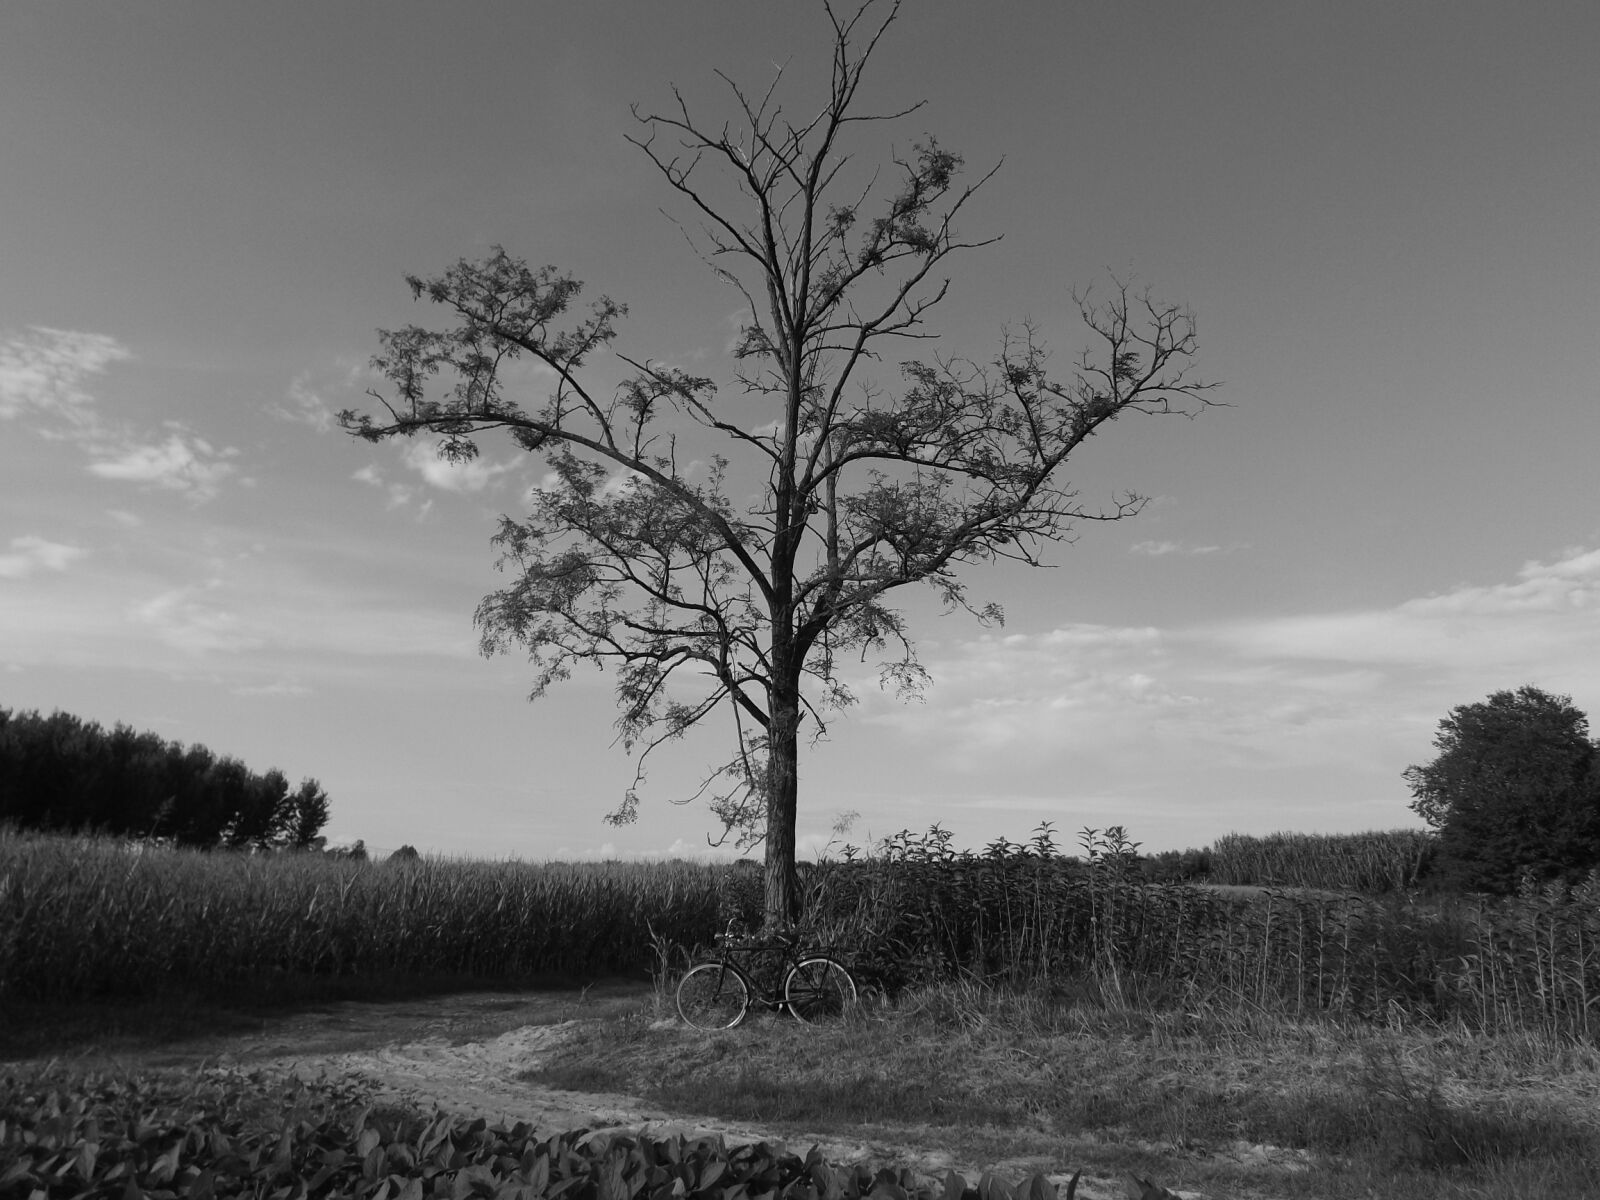 Fujifilm FinePix S4700 sample photo. Landscape, white, nero photography